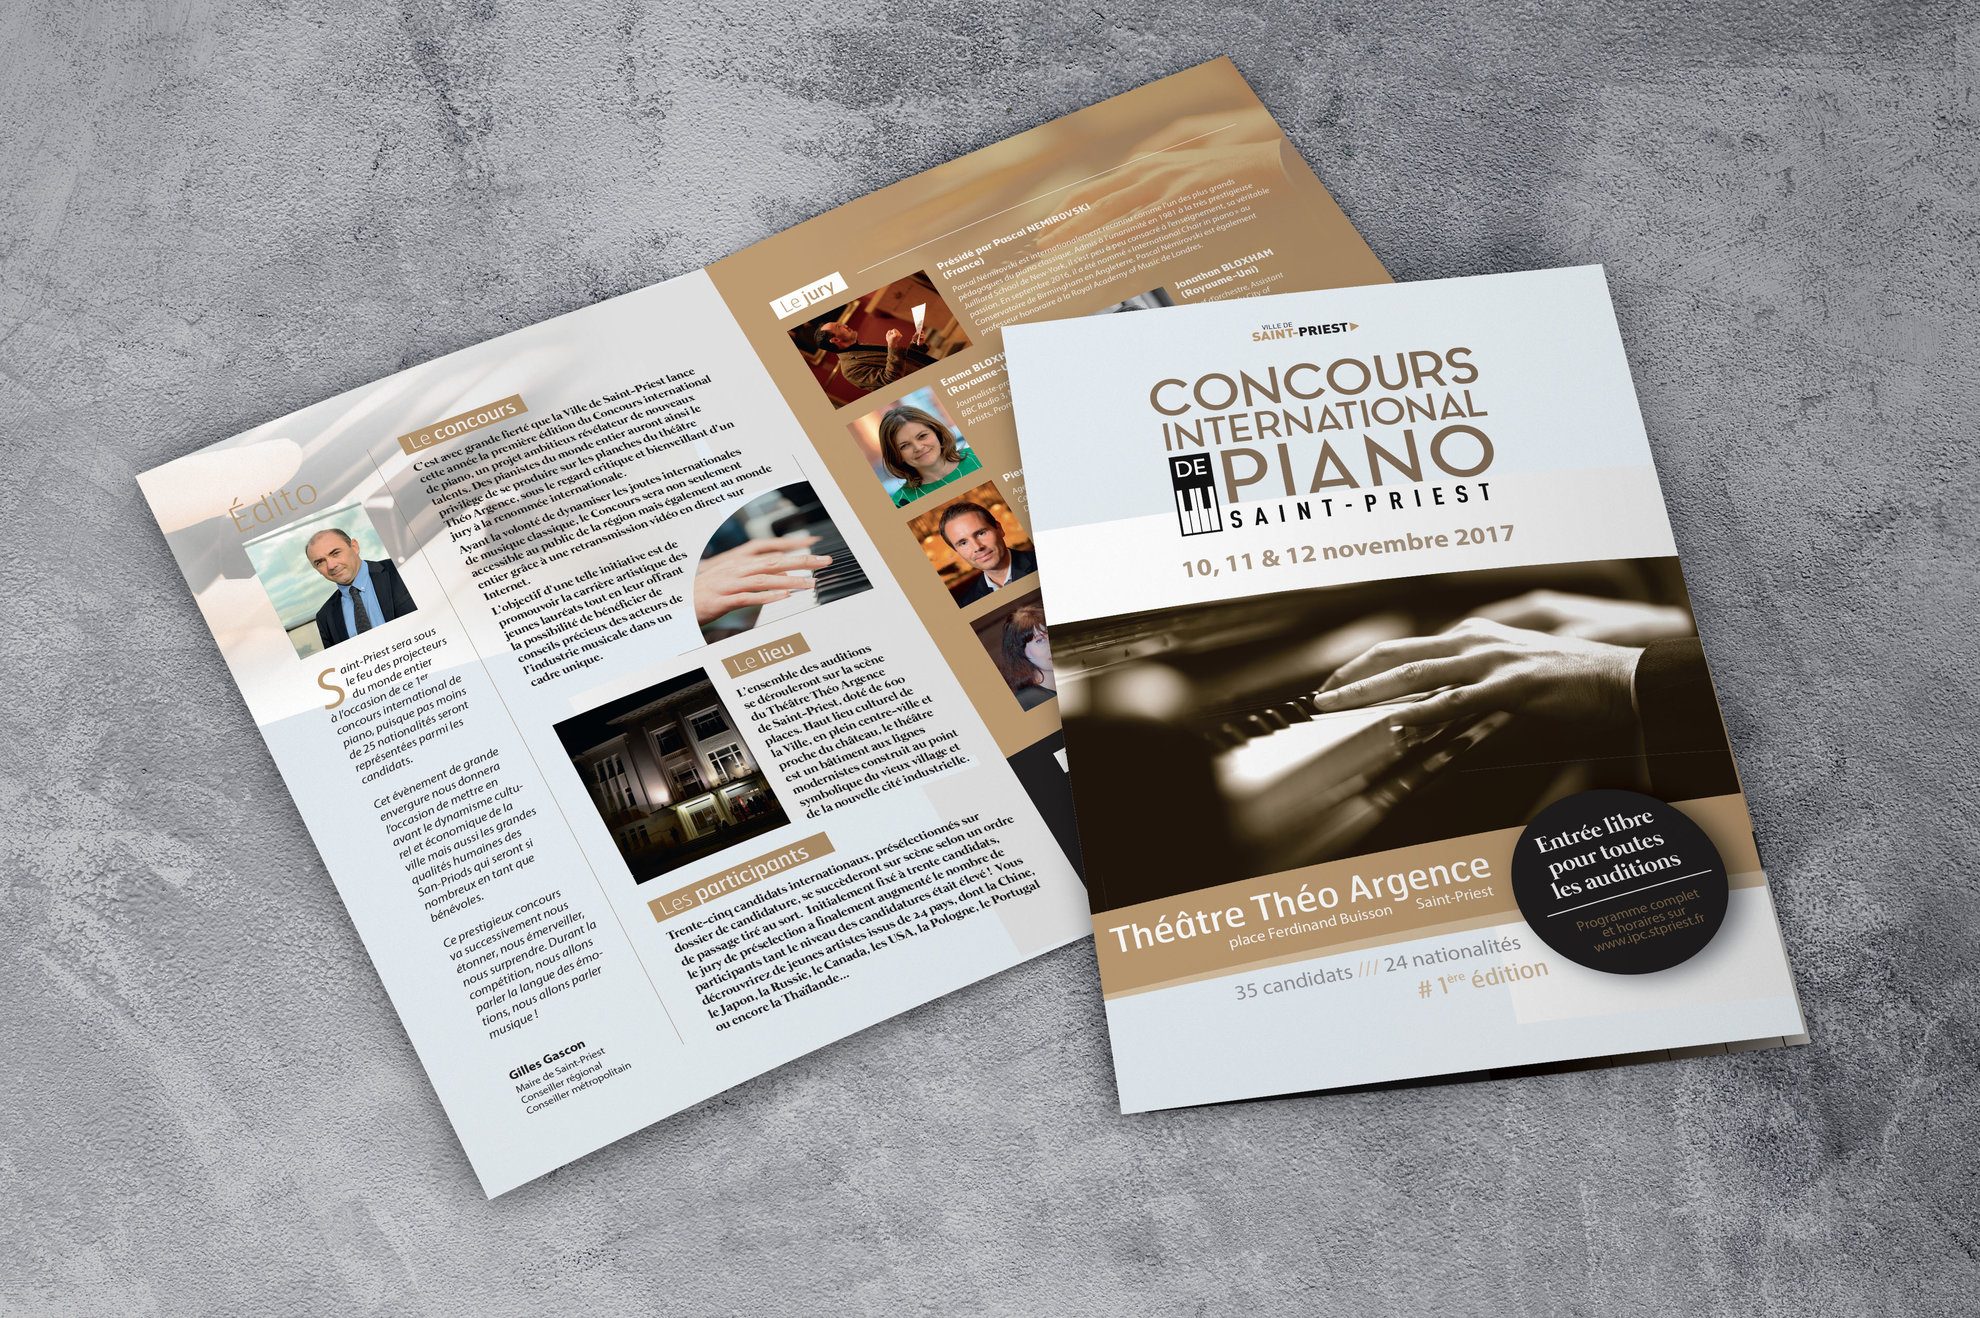 Programme du concours international de piano